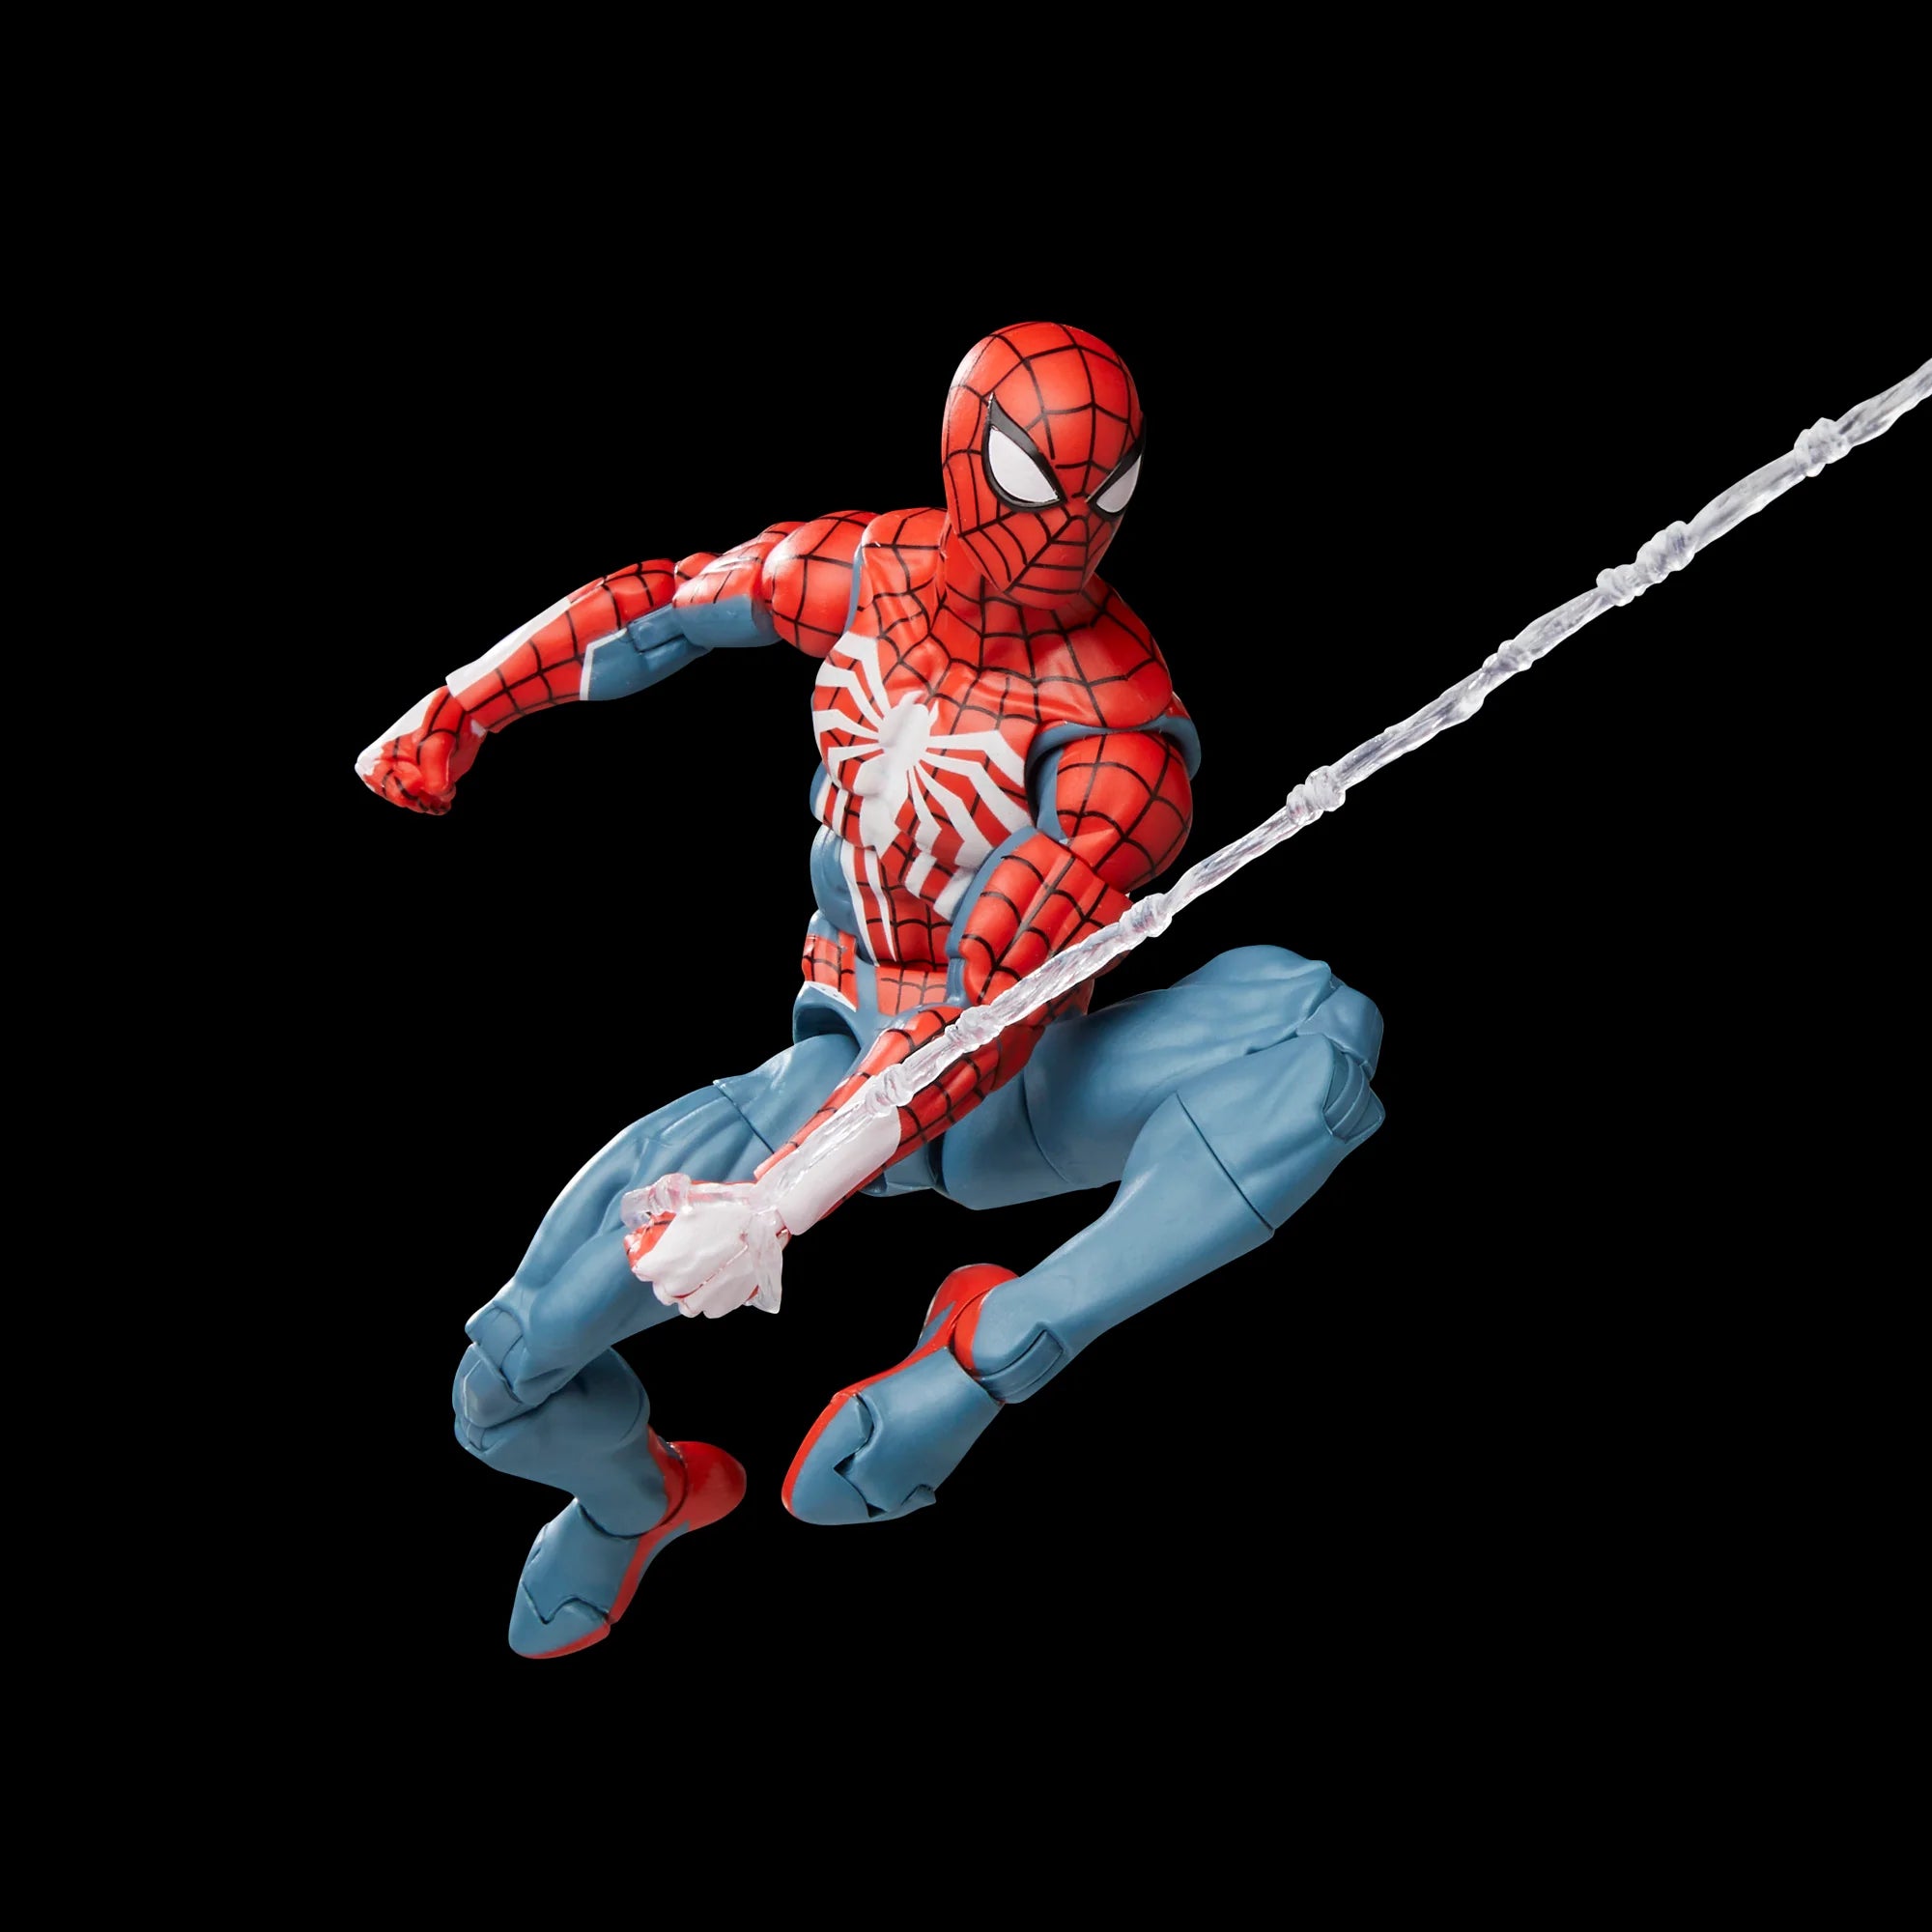 Marvel Legends Gamerverse Spider-Man Action Figure